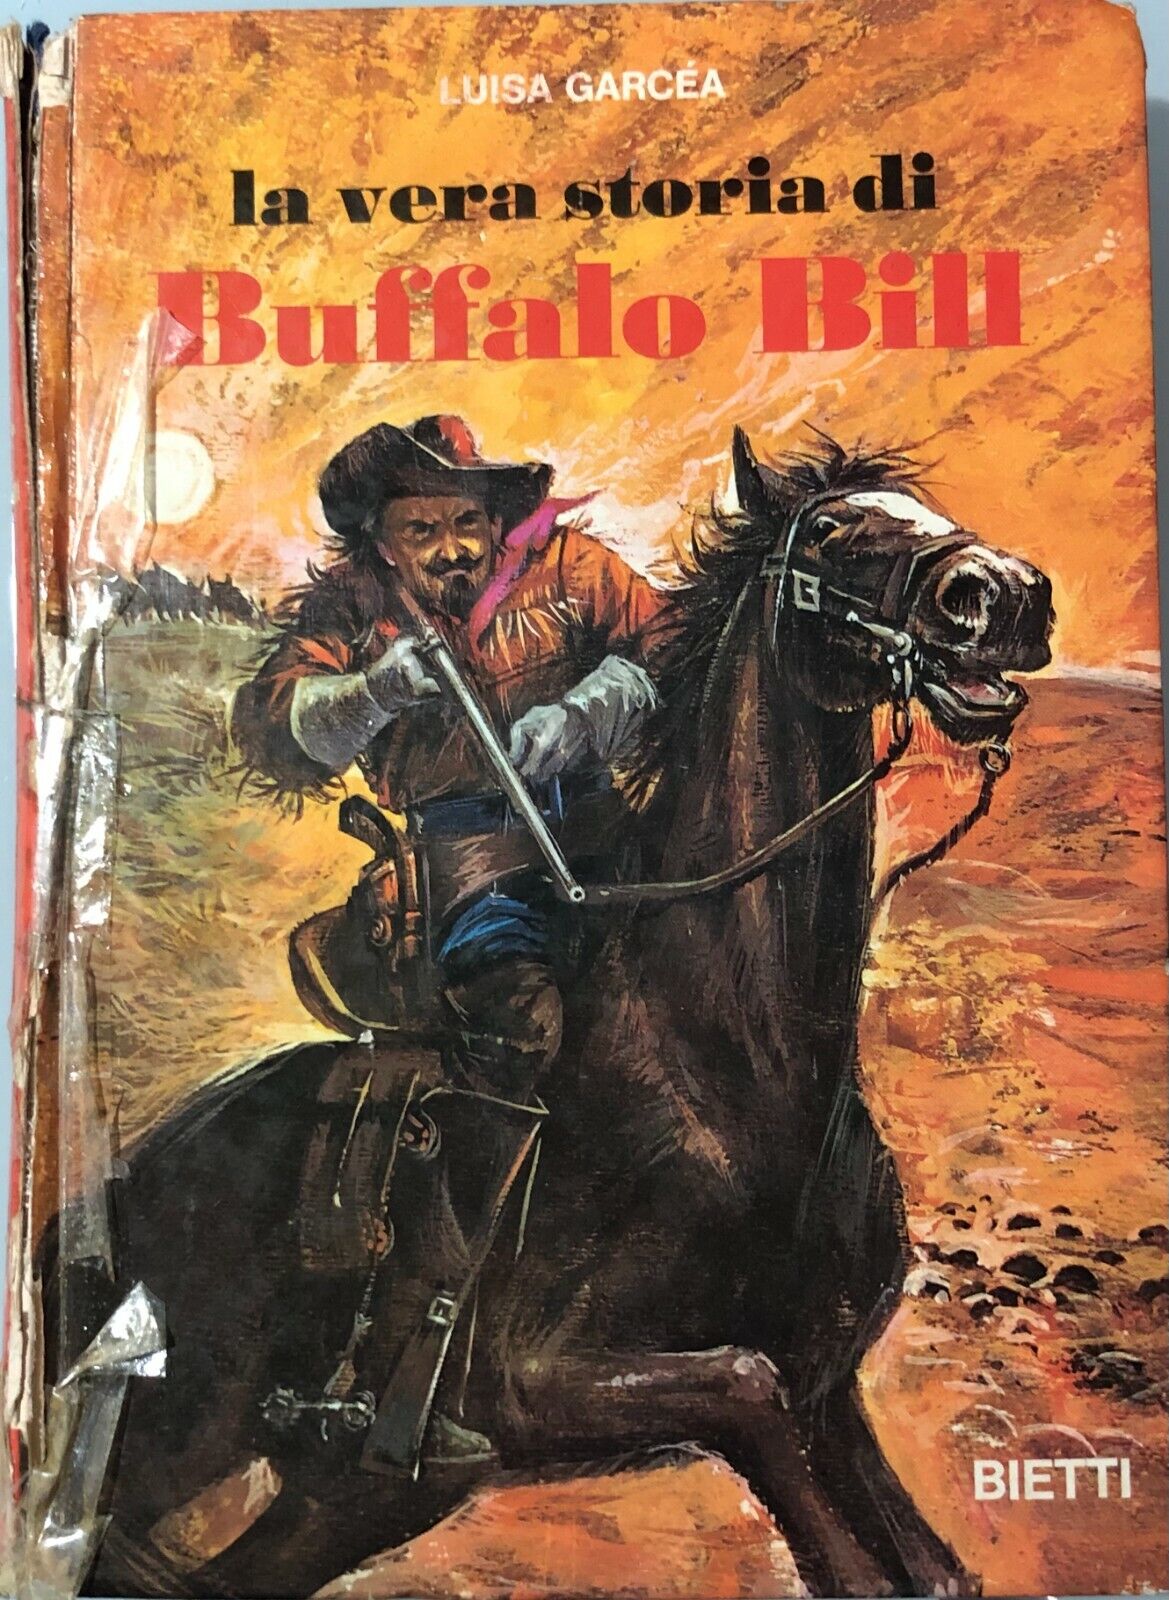 La vera storia di Buffalo Bill di Luisa Garcea, 1971, Bietti